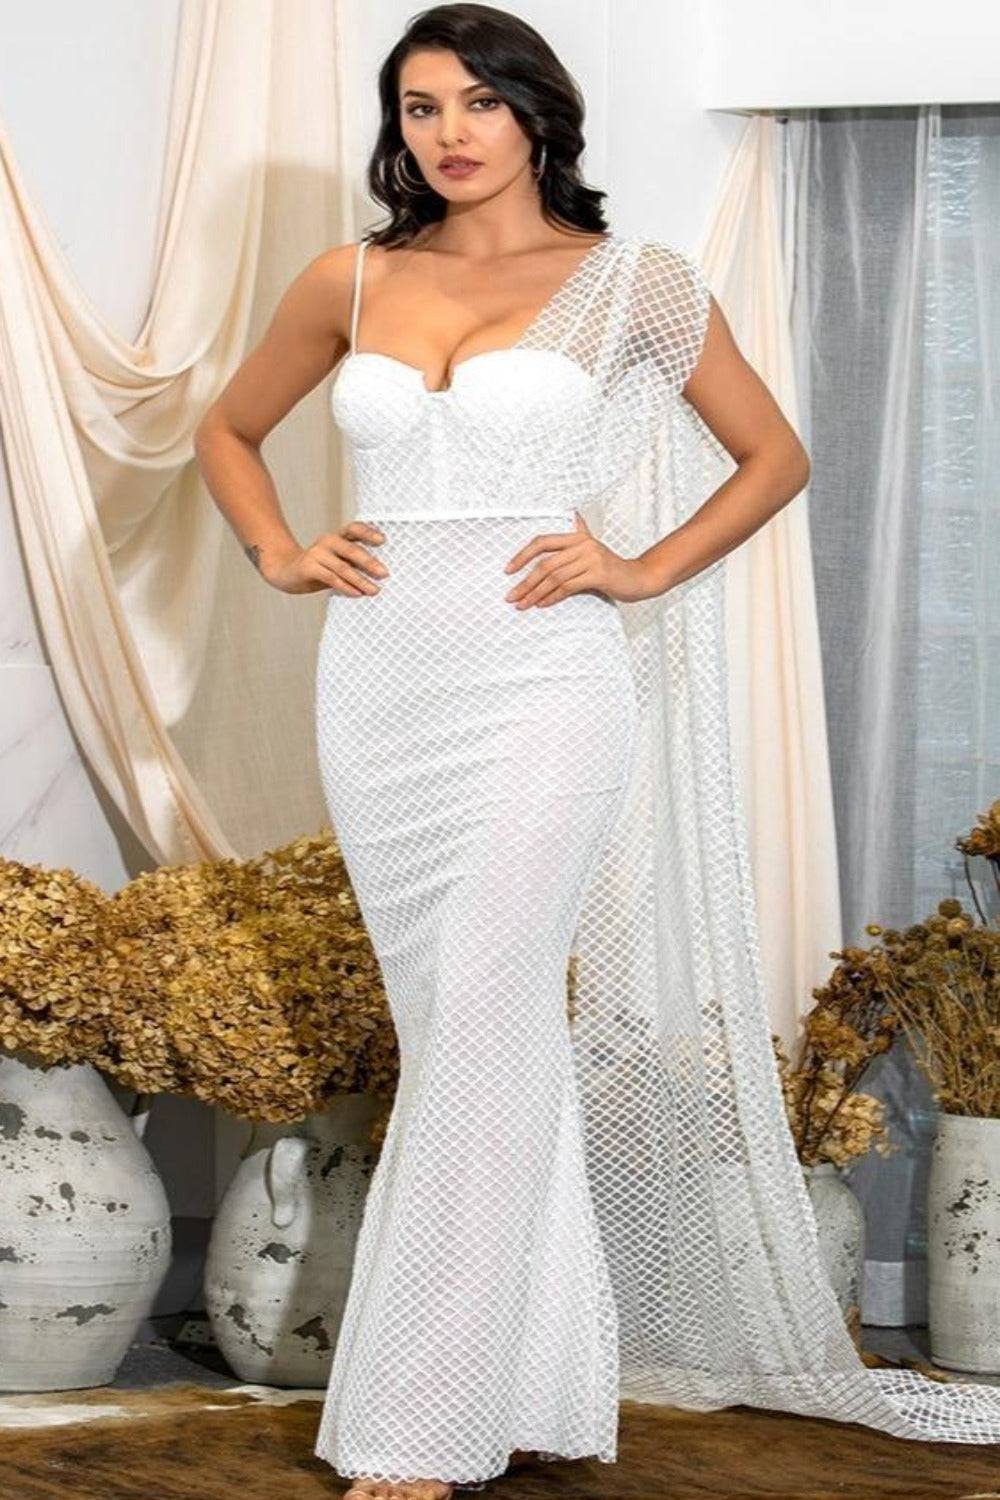 Charlotte White Bodycon Sparkly Wedding Dress - TGC Boutique - White Wedding Dress